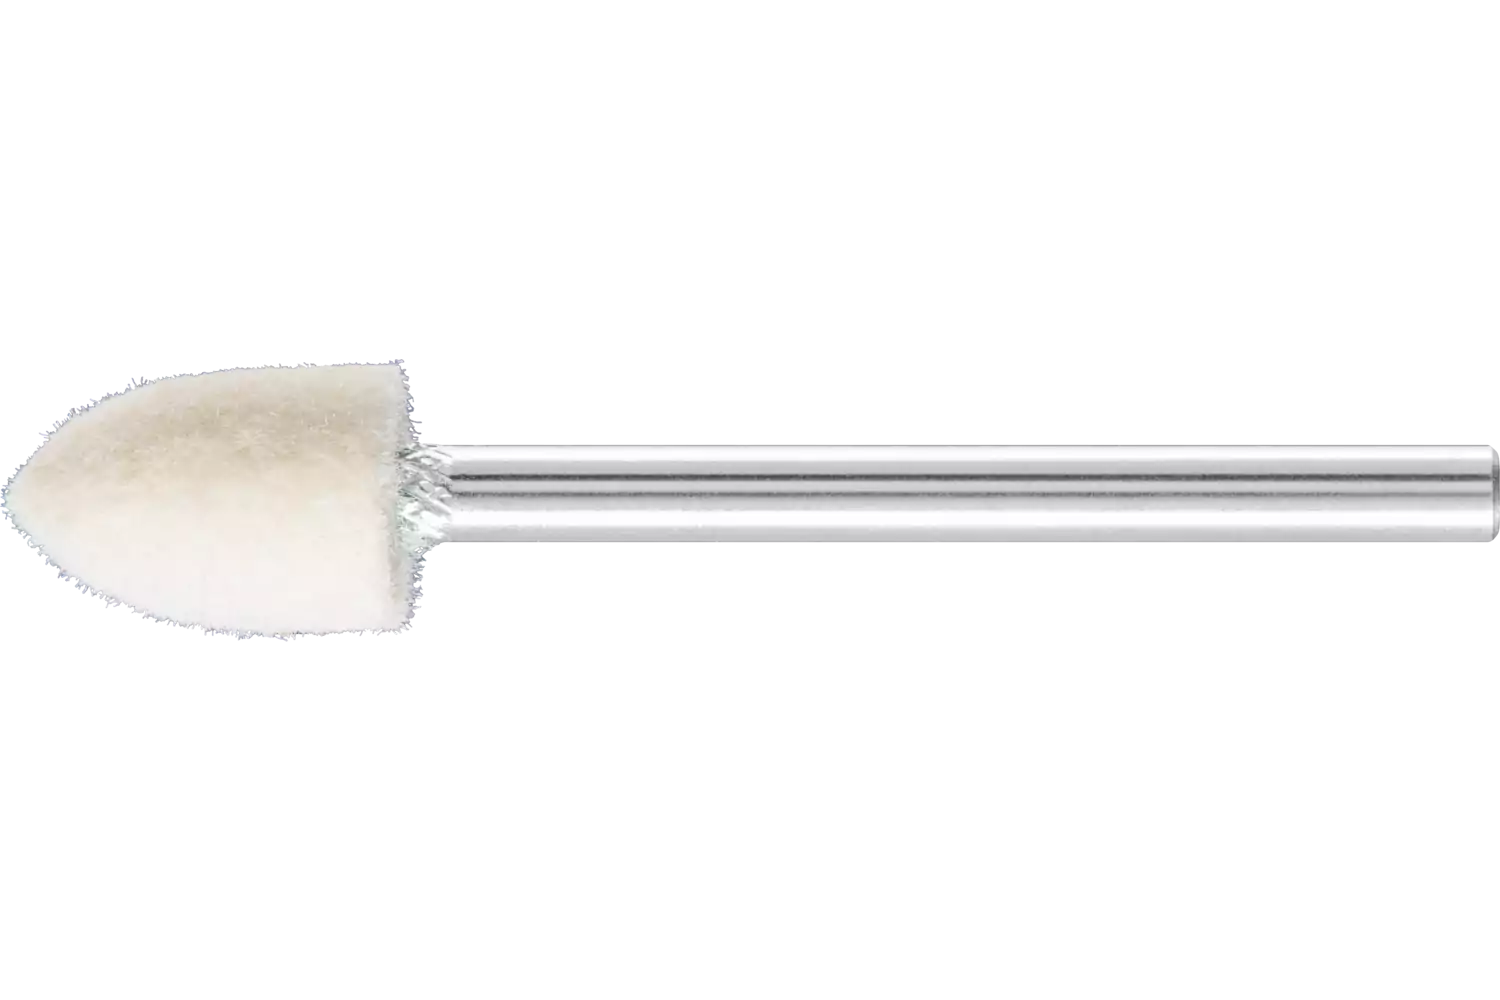 Feltri con gambo per lucidare duri forma a cono appuntito Ø 8x12 mm, gambo Ø 3 mm 1